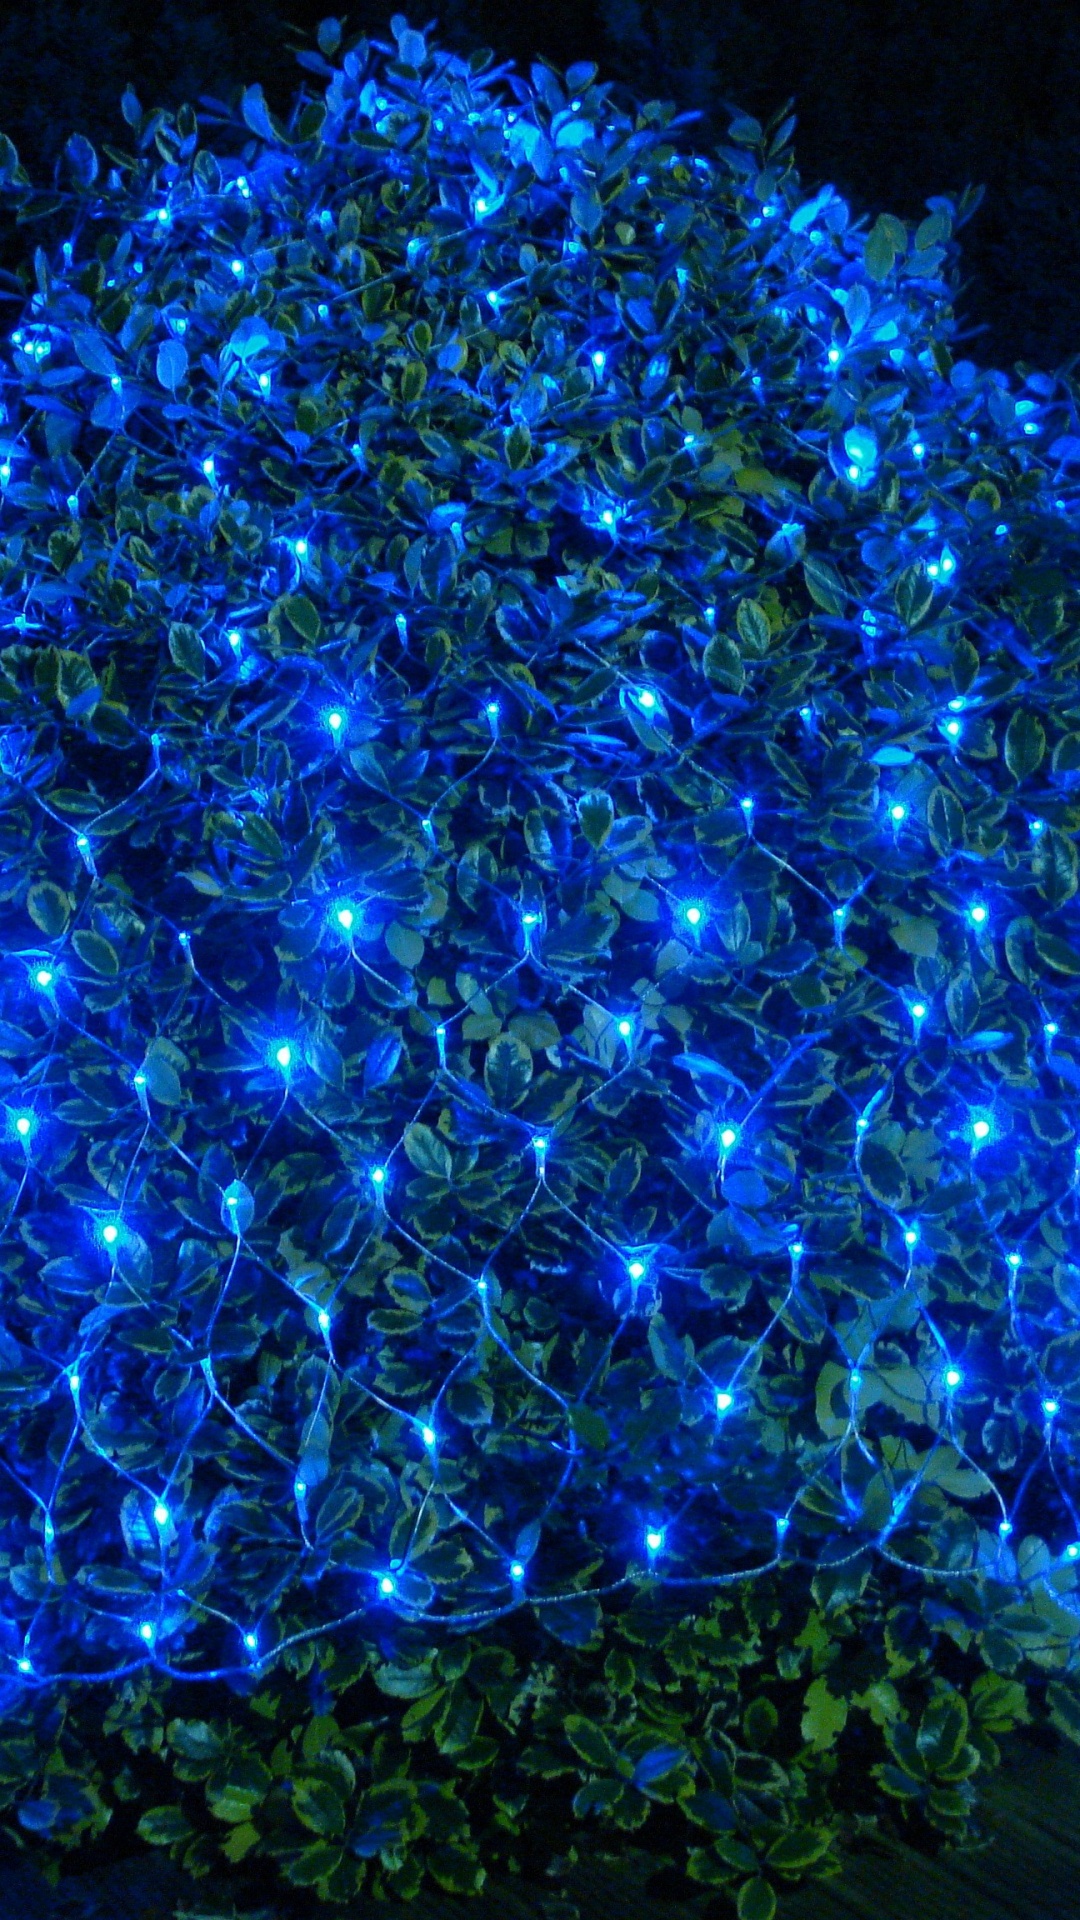 Led-Lampe, Weihnachtsbeleuchtung, Nachtlicht, Licht, Blau. Wallpaper in 1080x1920 Resolution